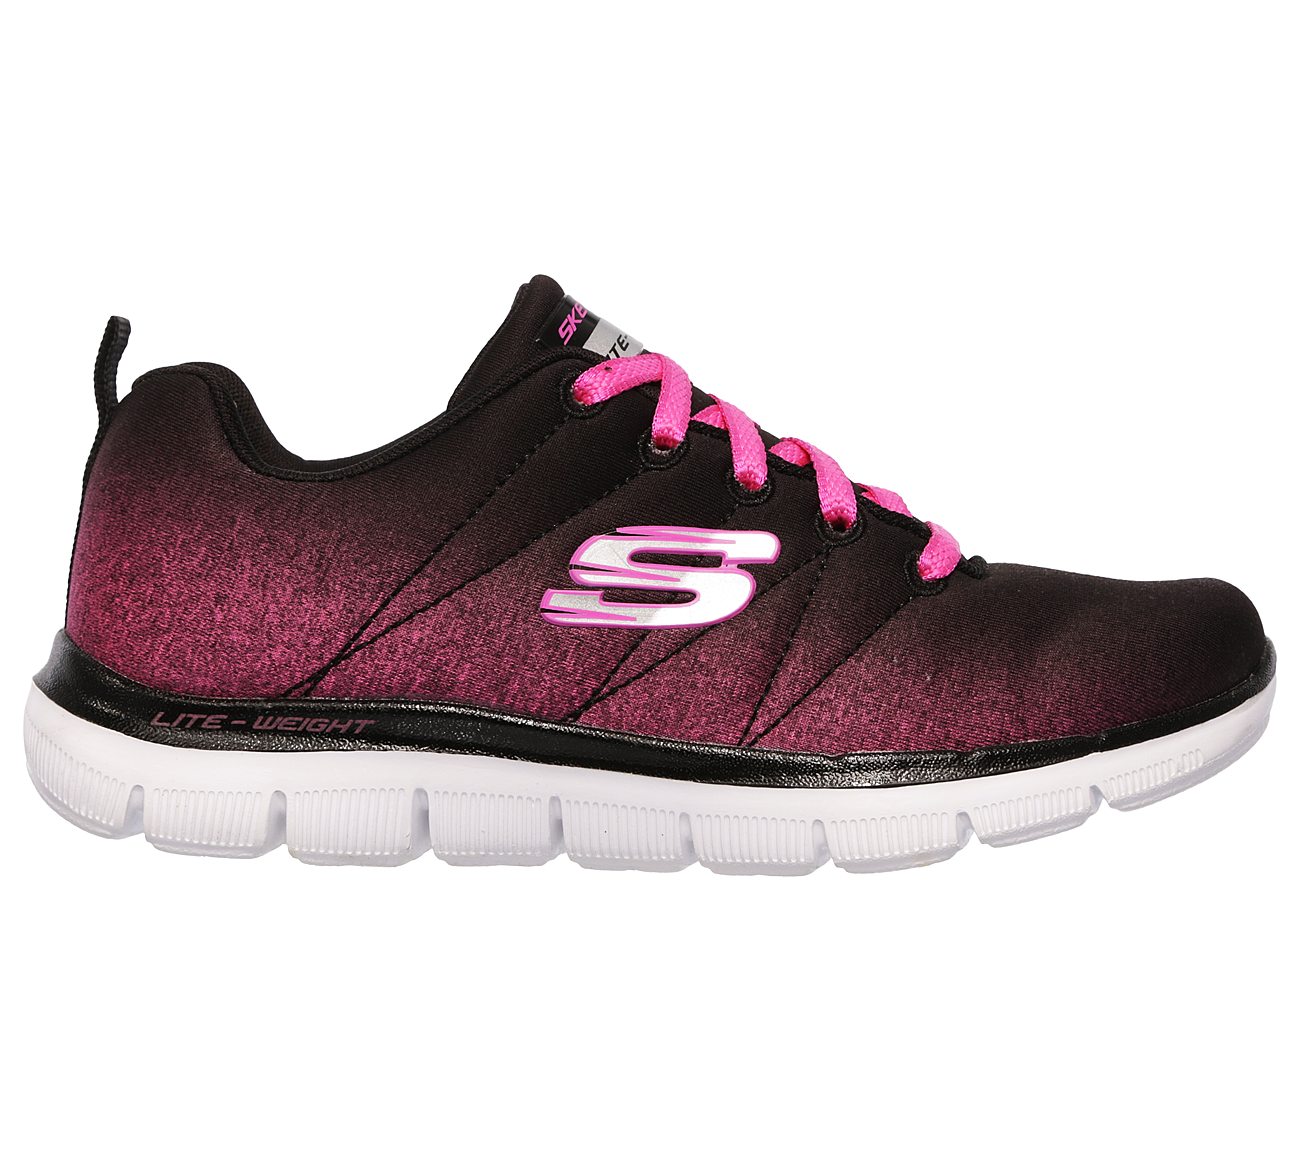 Buy SKECHERS SKECH APPEAL 2.0-BRIGHT SIDE Sport Shoes